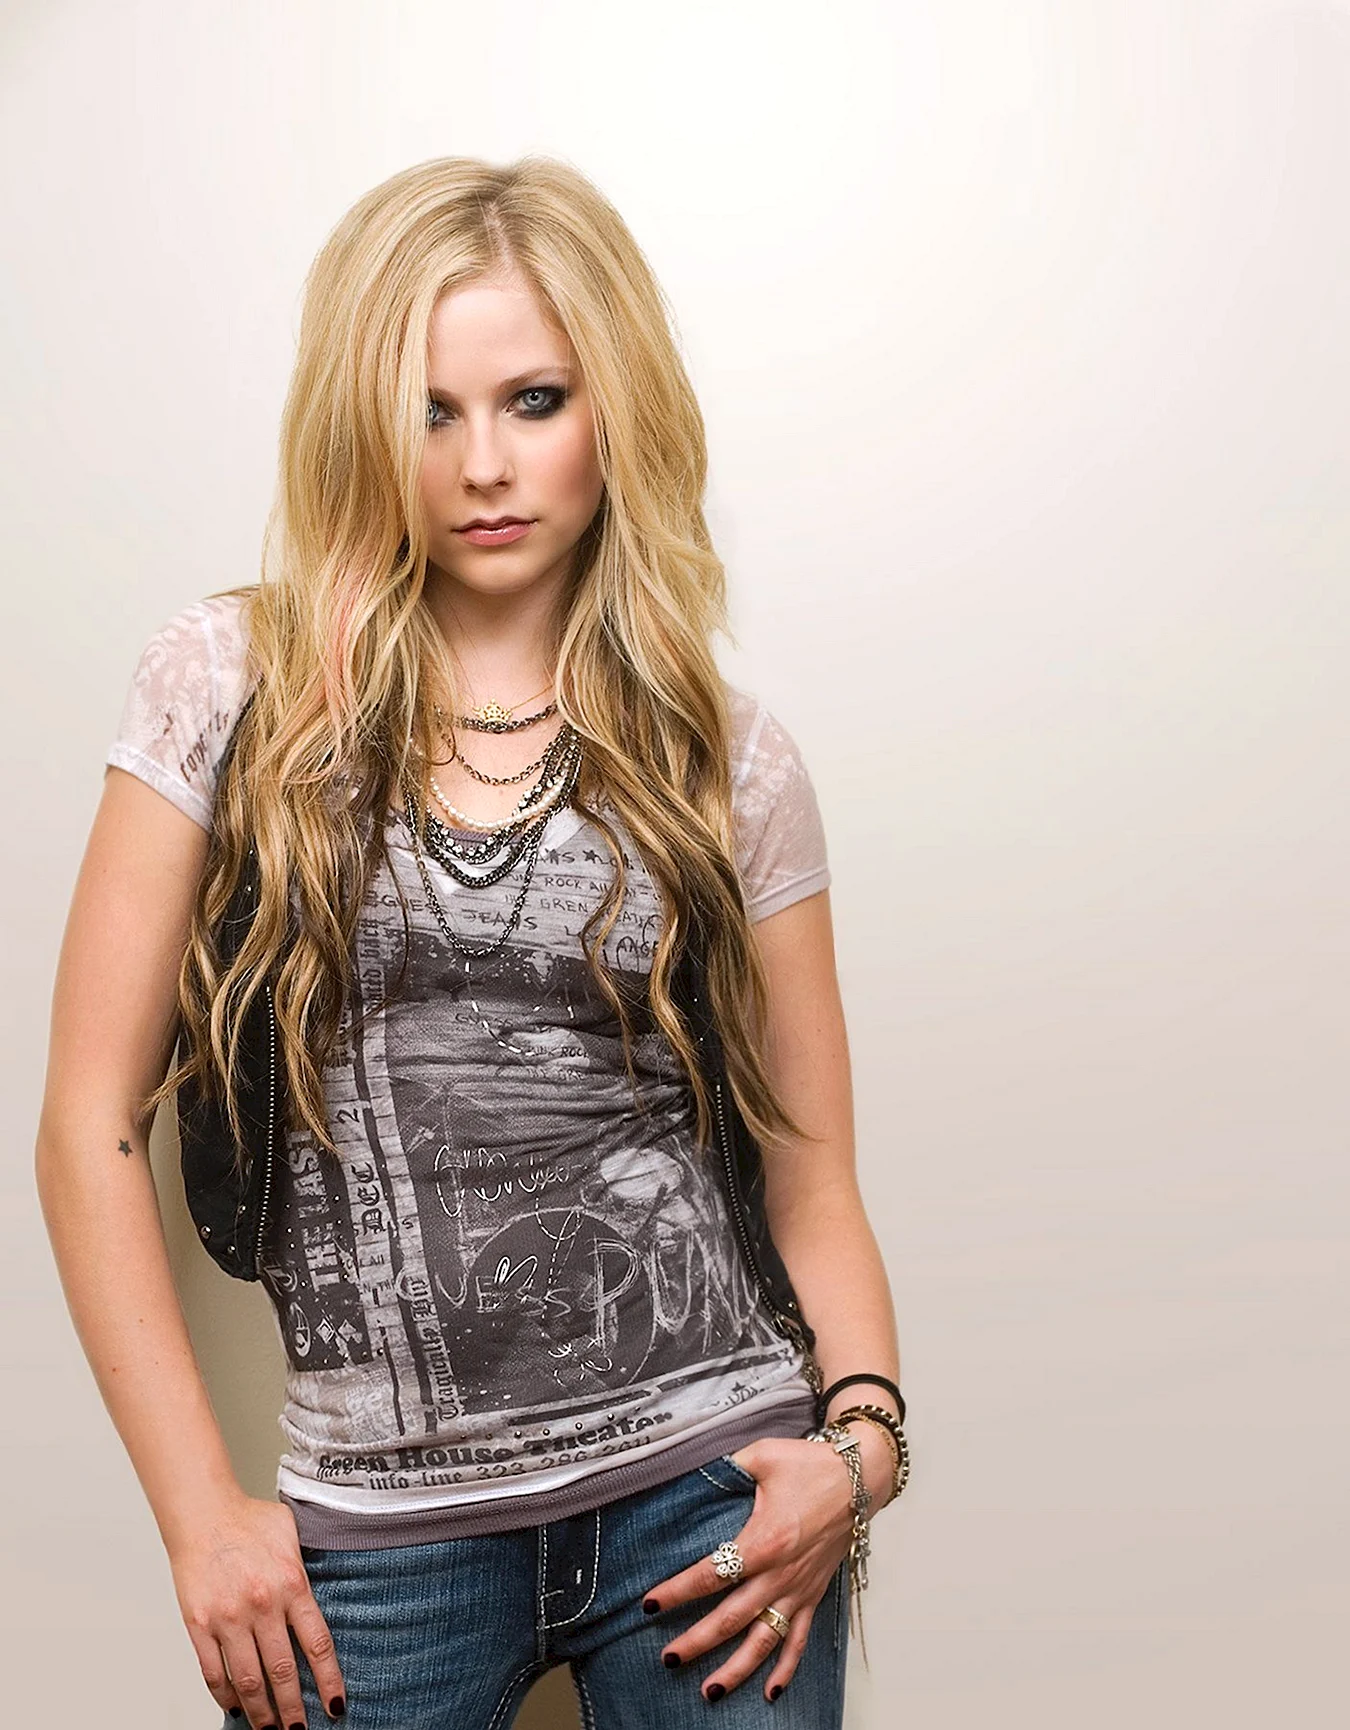 Avril Lavigne Queen